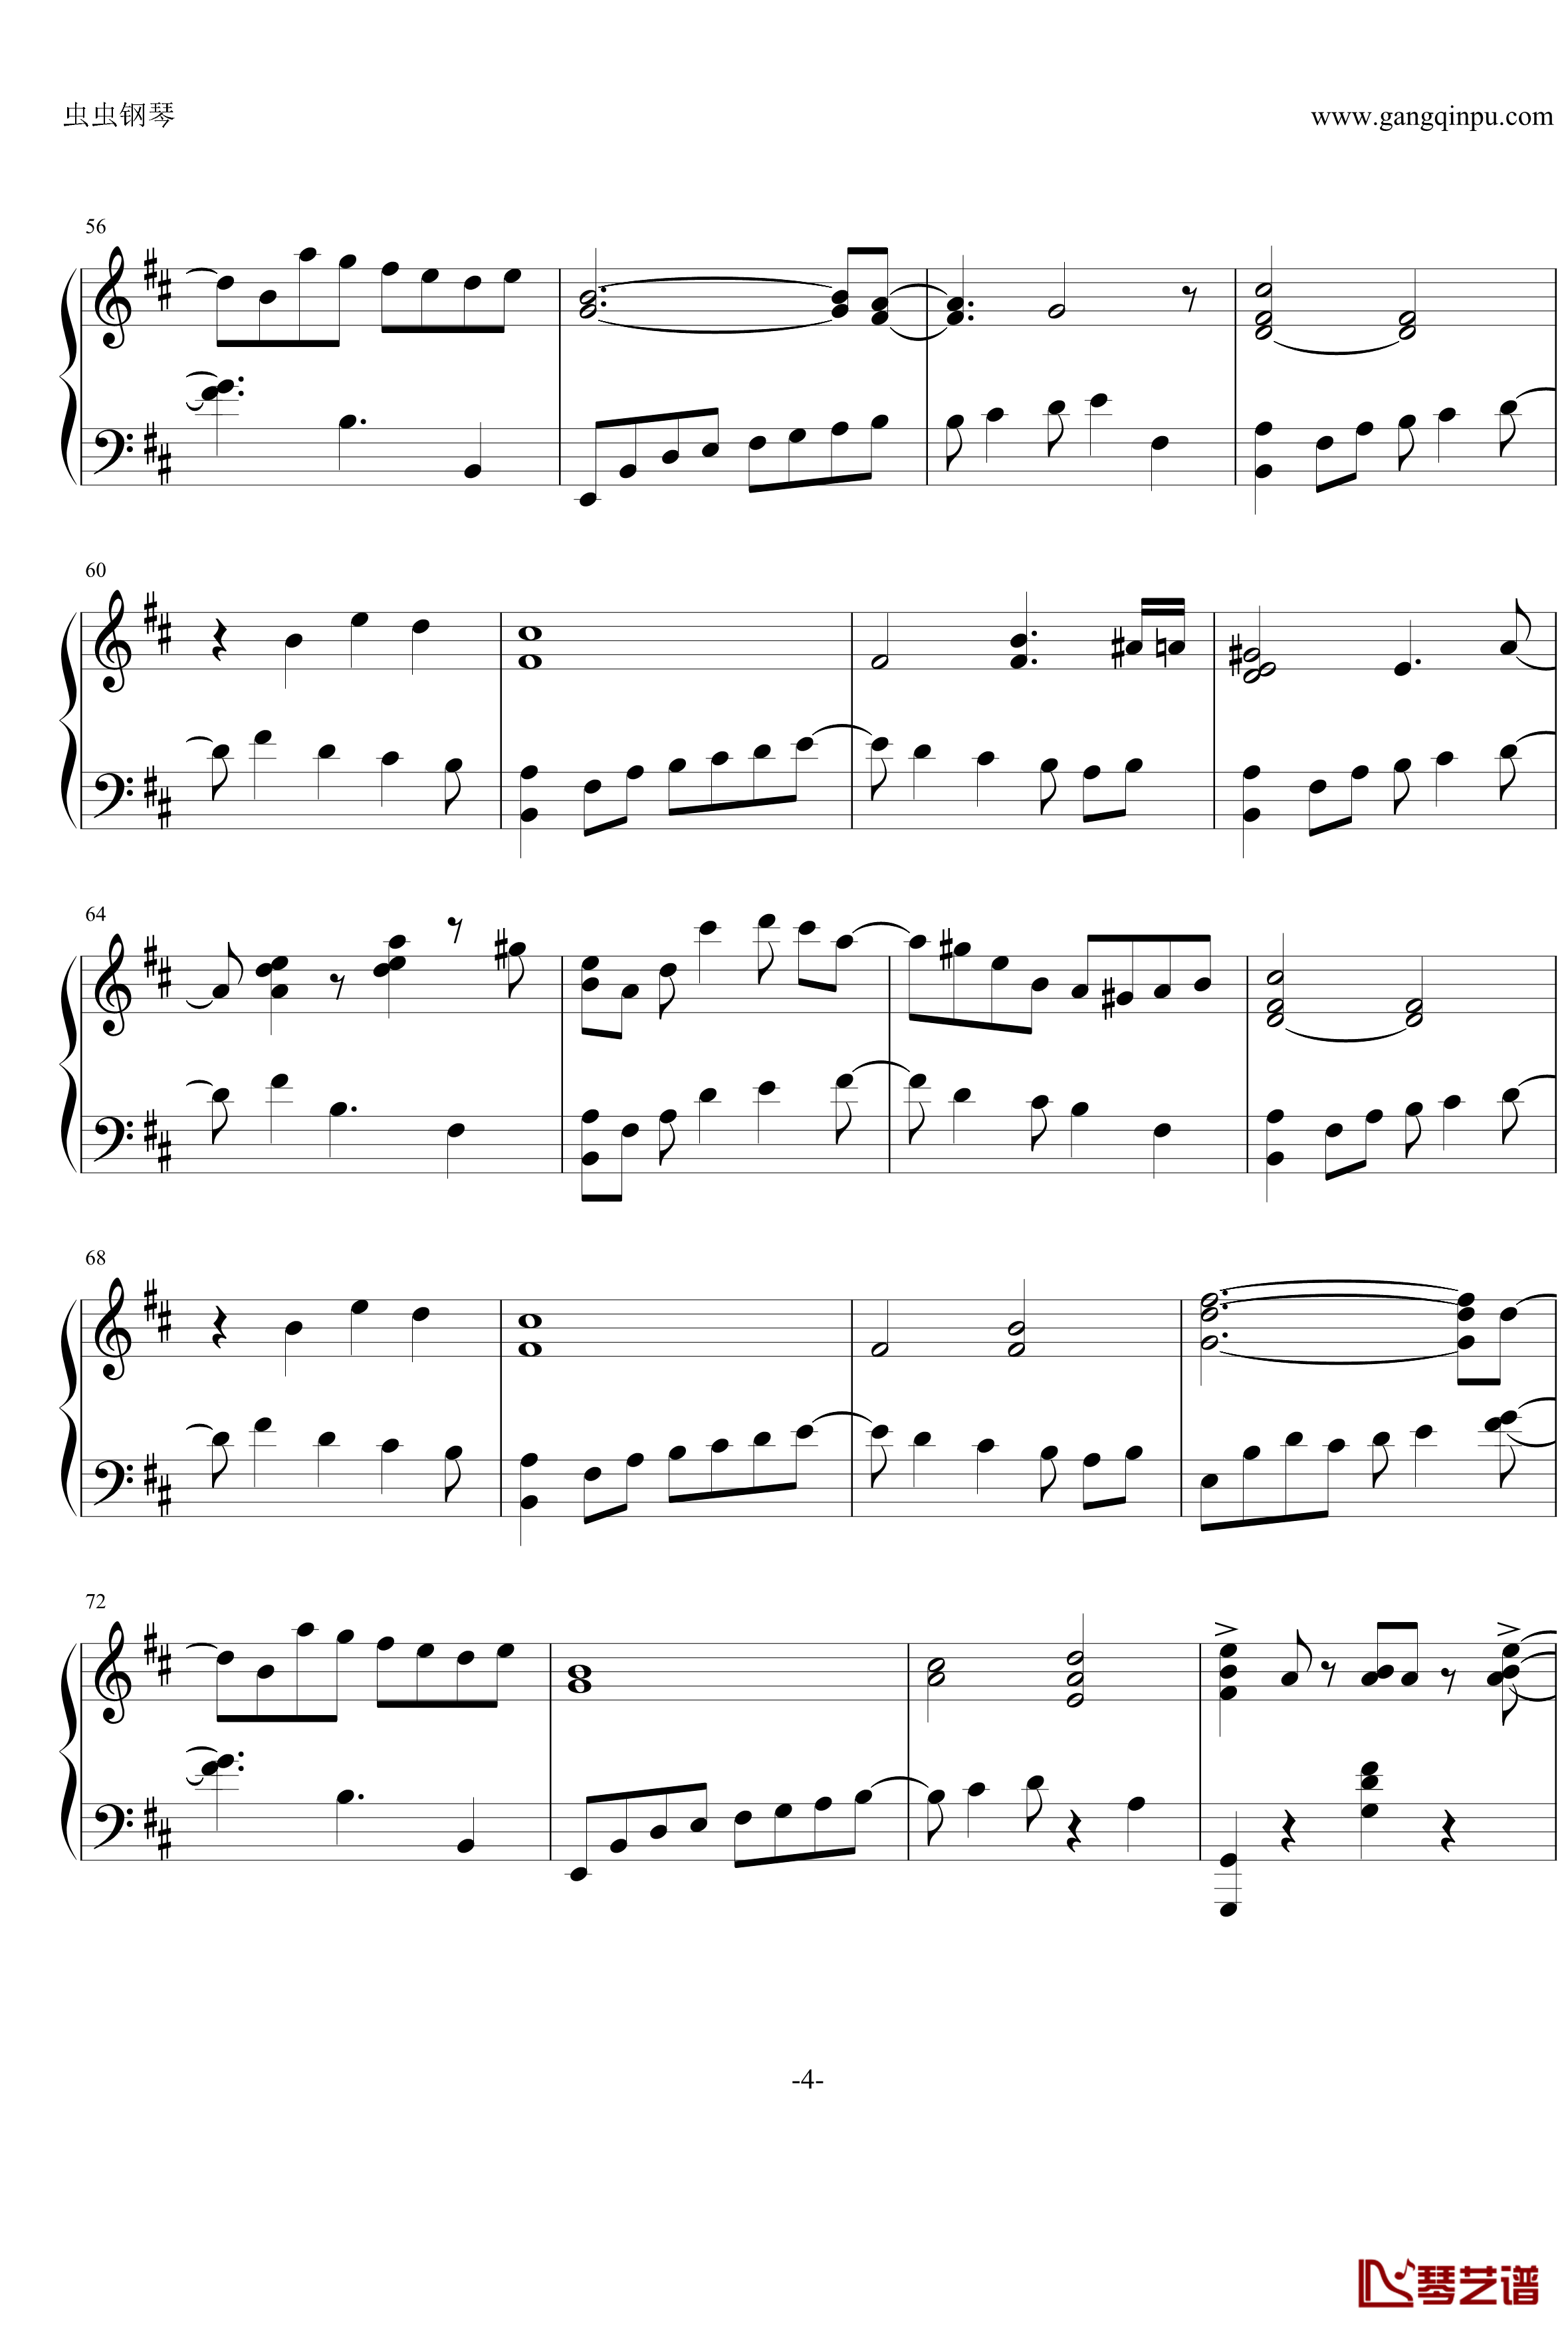 最终幻想13雷霆主题音乐钢琴谱-ライトニングのテーマ 閃光-最终幻想4